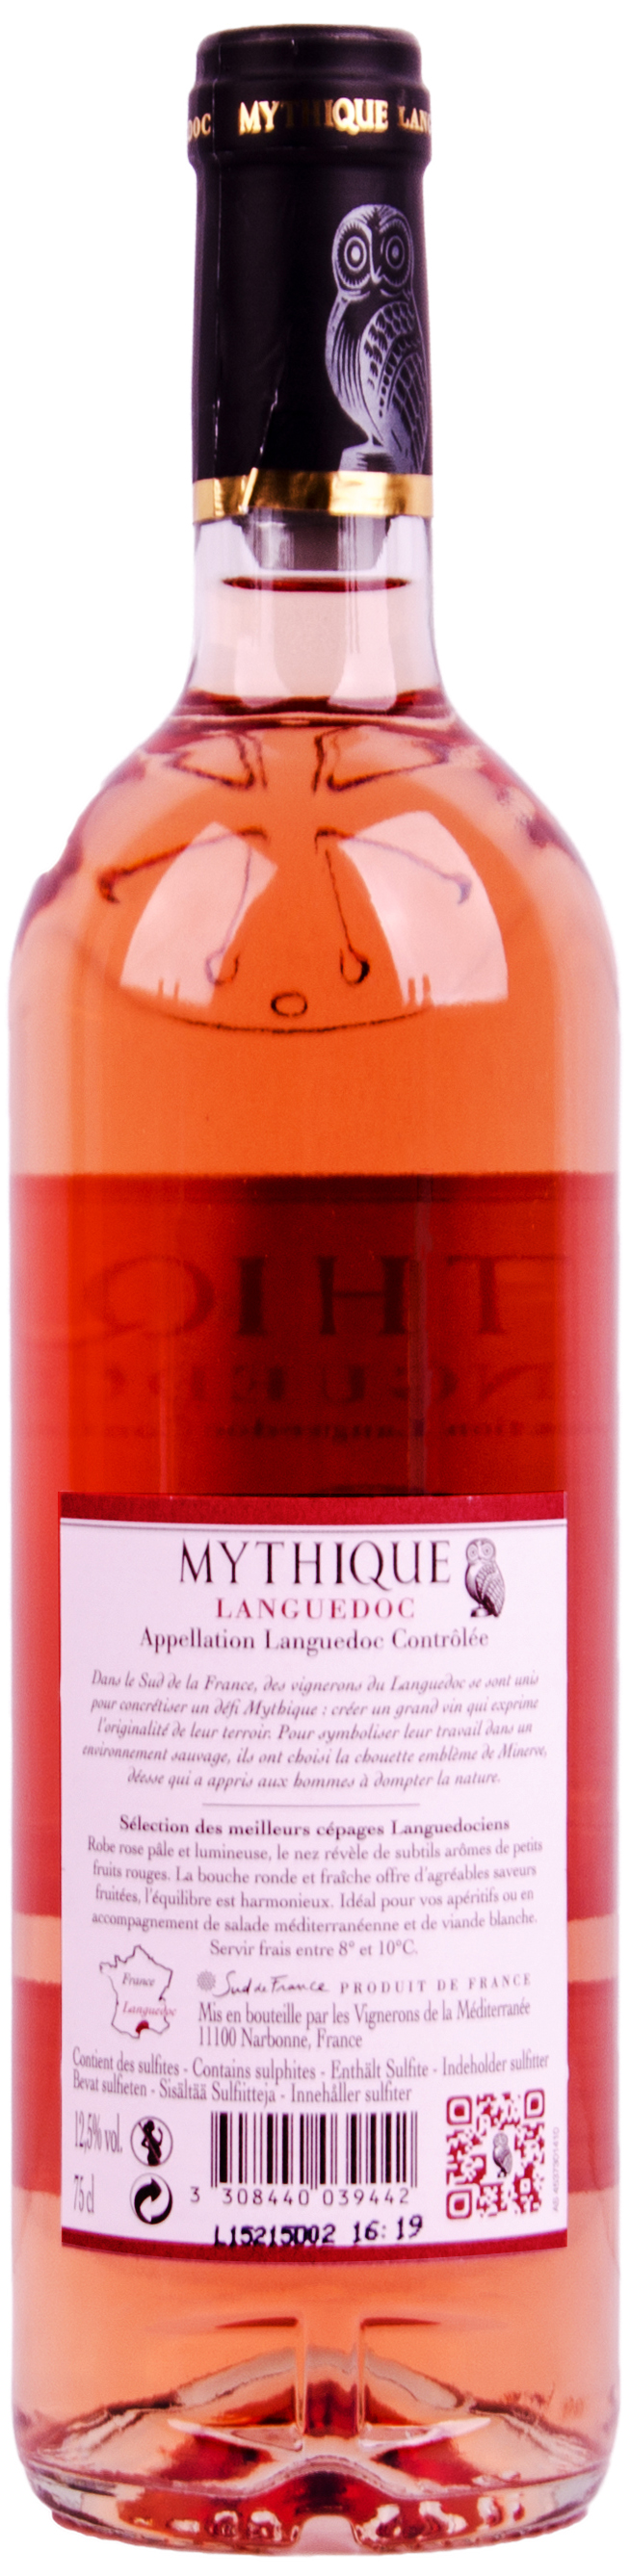 神秘客桃紅葡萄酒 MYTHIQUE LANGUEDOC ROSE